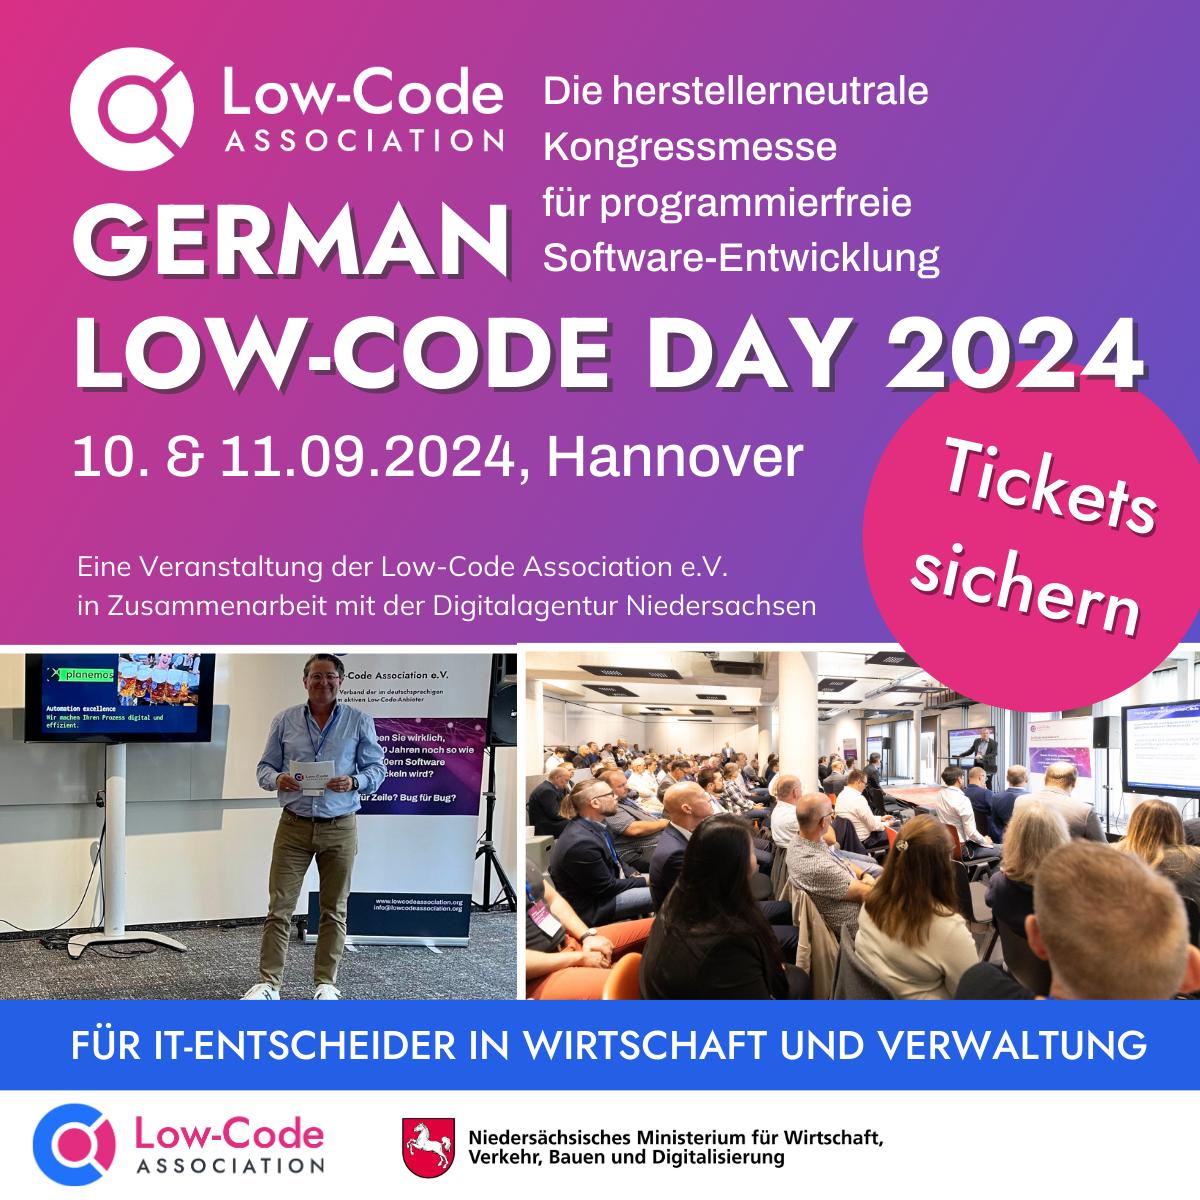 Ankündigung des German Low Code Day 2024 mit Text, Fotos und Tickethinweis.